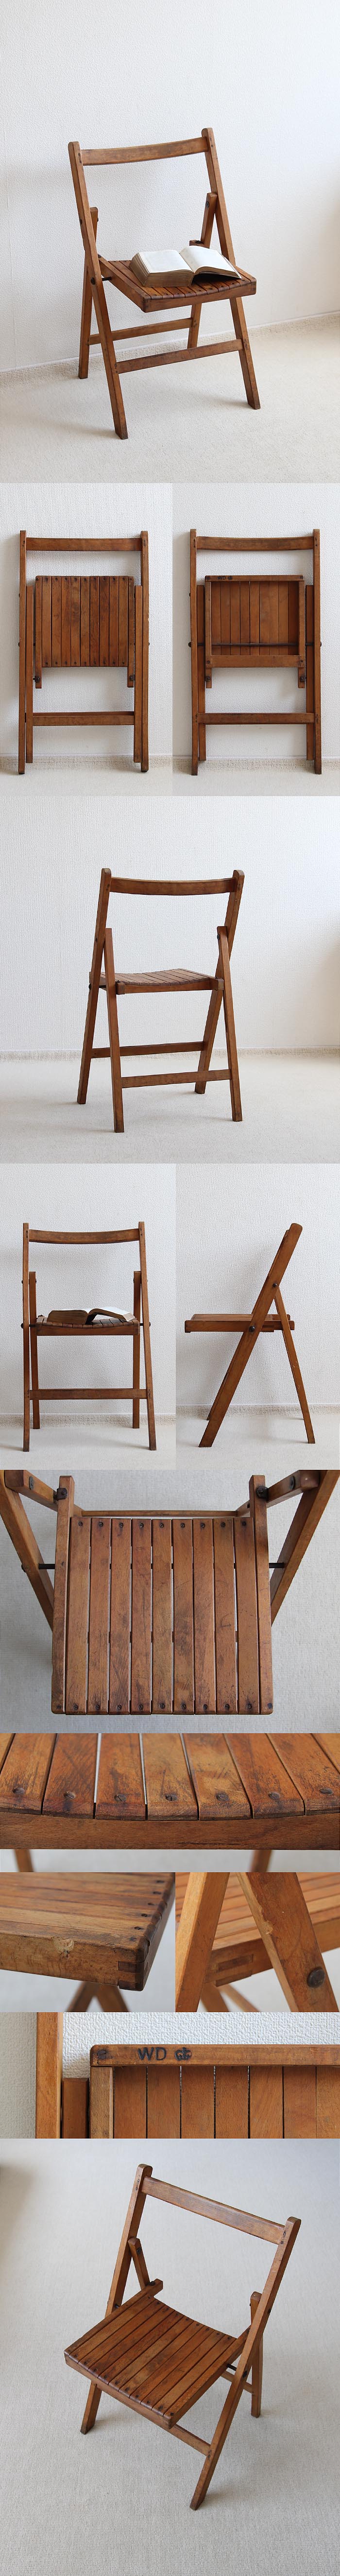 イギリス アンティーク フォールディングチェア 古木 木製 インテリア 家具「折りたたみ椅子」P-371